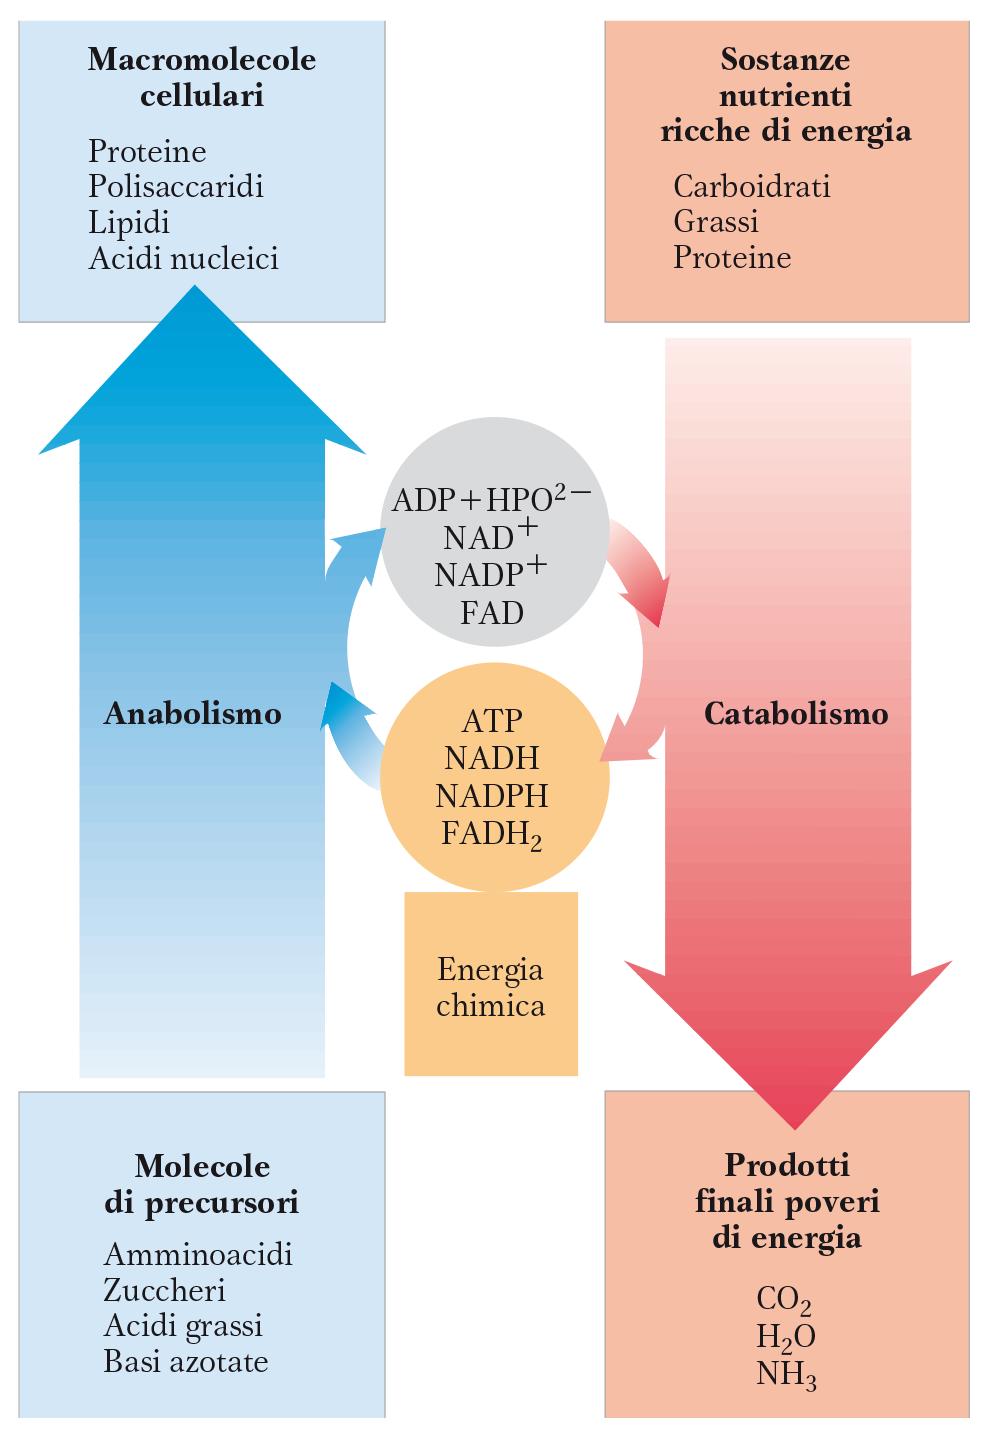 Il metabolismo è suddivisibile in catabolismo e anabolismo. Il catabolismo è l insieme delle reazioni biochimiche che consentono di ricavare energia chimica (ATP) dalle molecole complesse (nutrienti).